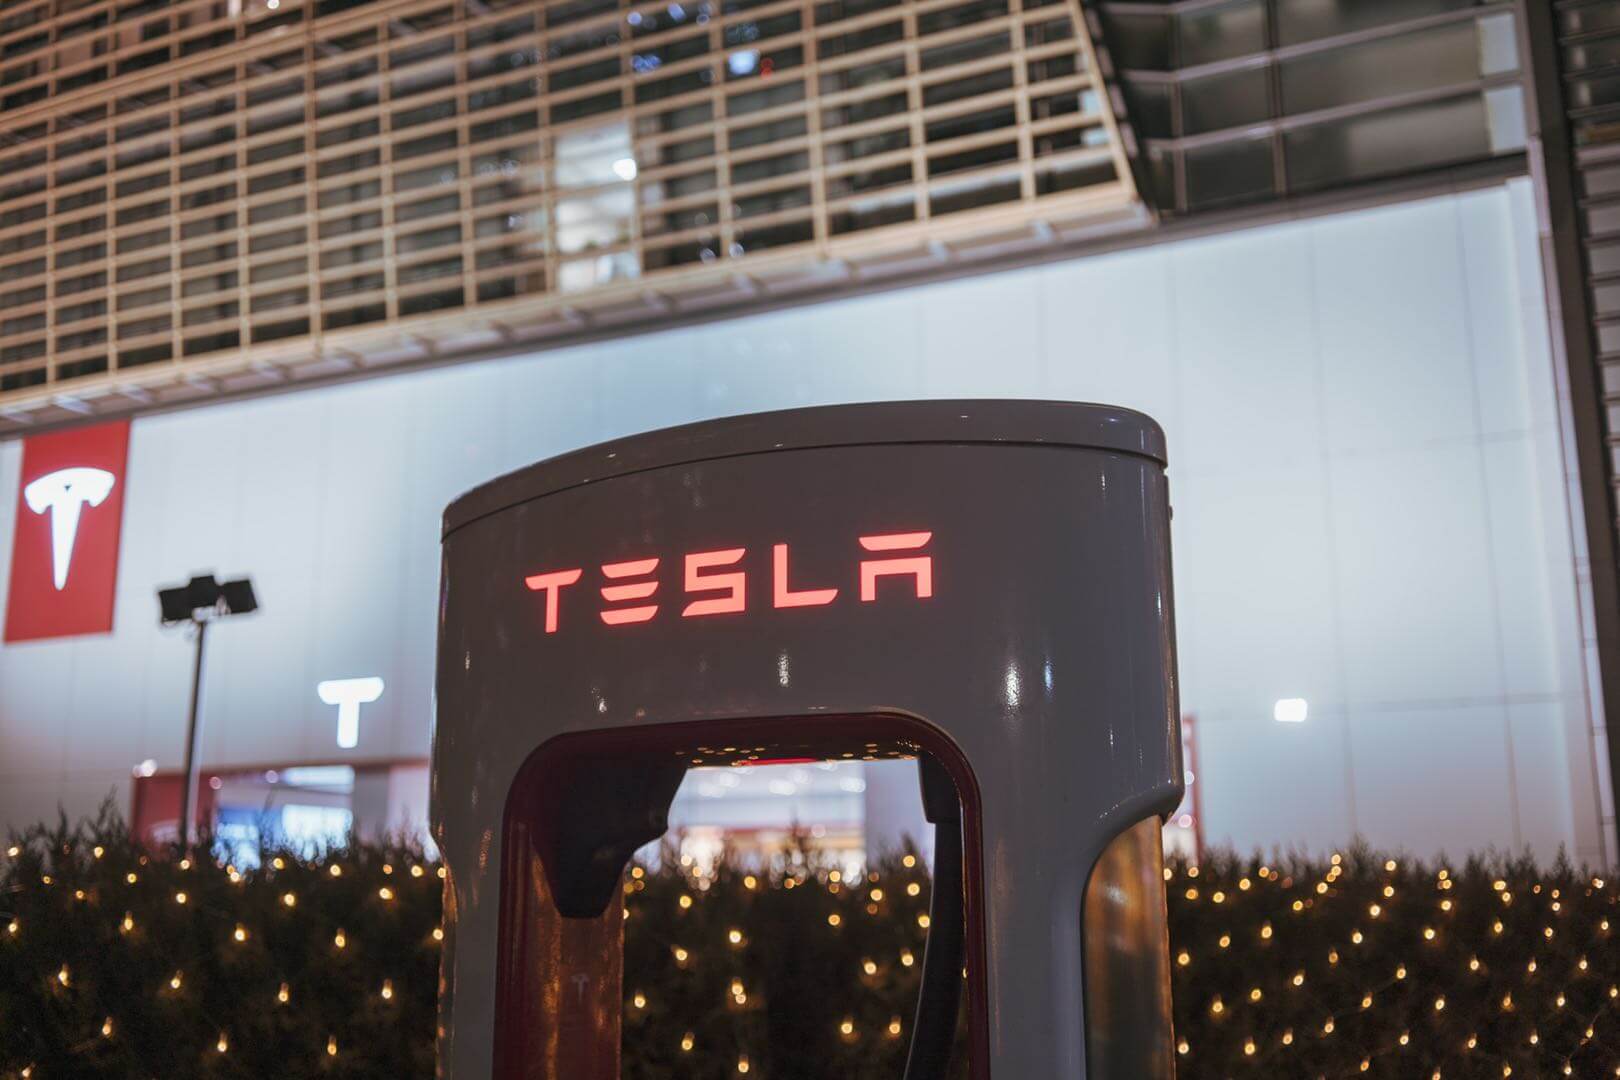 Het lidmaatschapsprogramma van Tesla Supercharger bedreigt concurrenten die elektrische voertuigen opladen